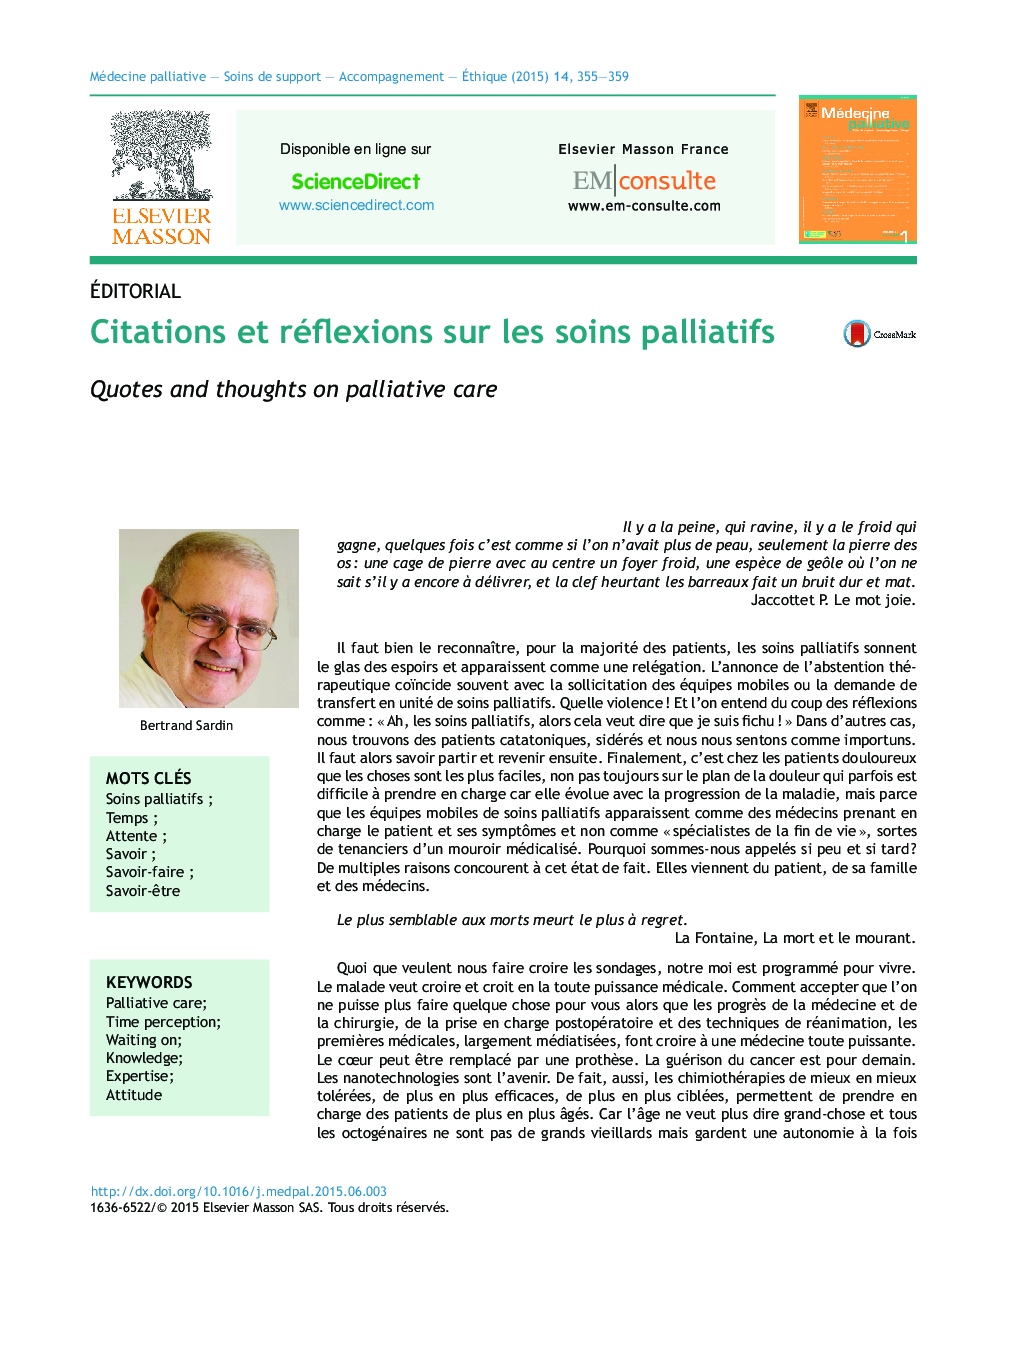 Citations et réflexions sur les soins palliatifs